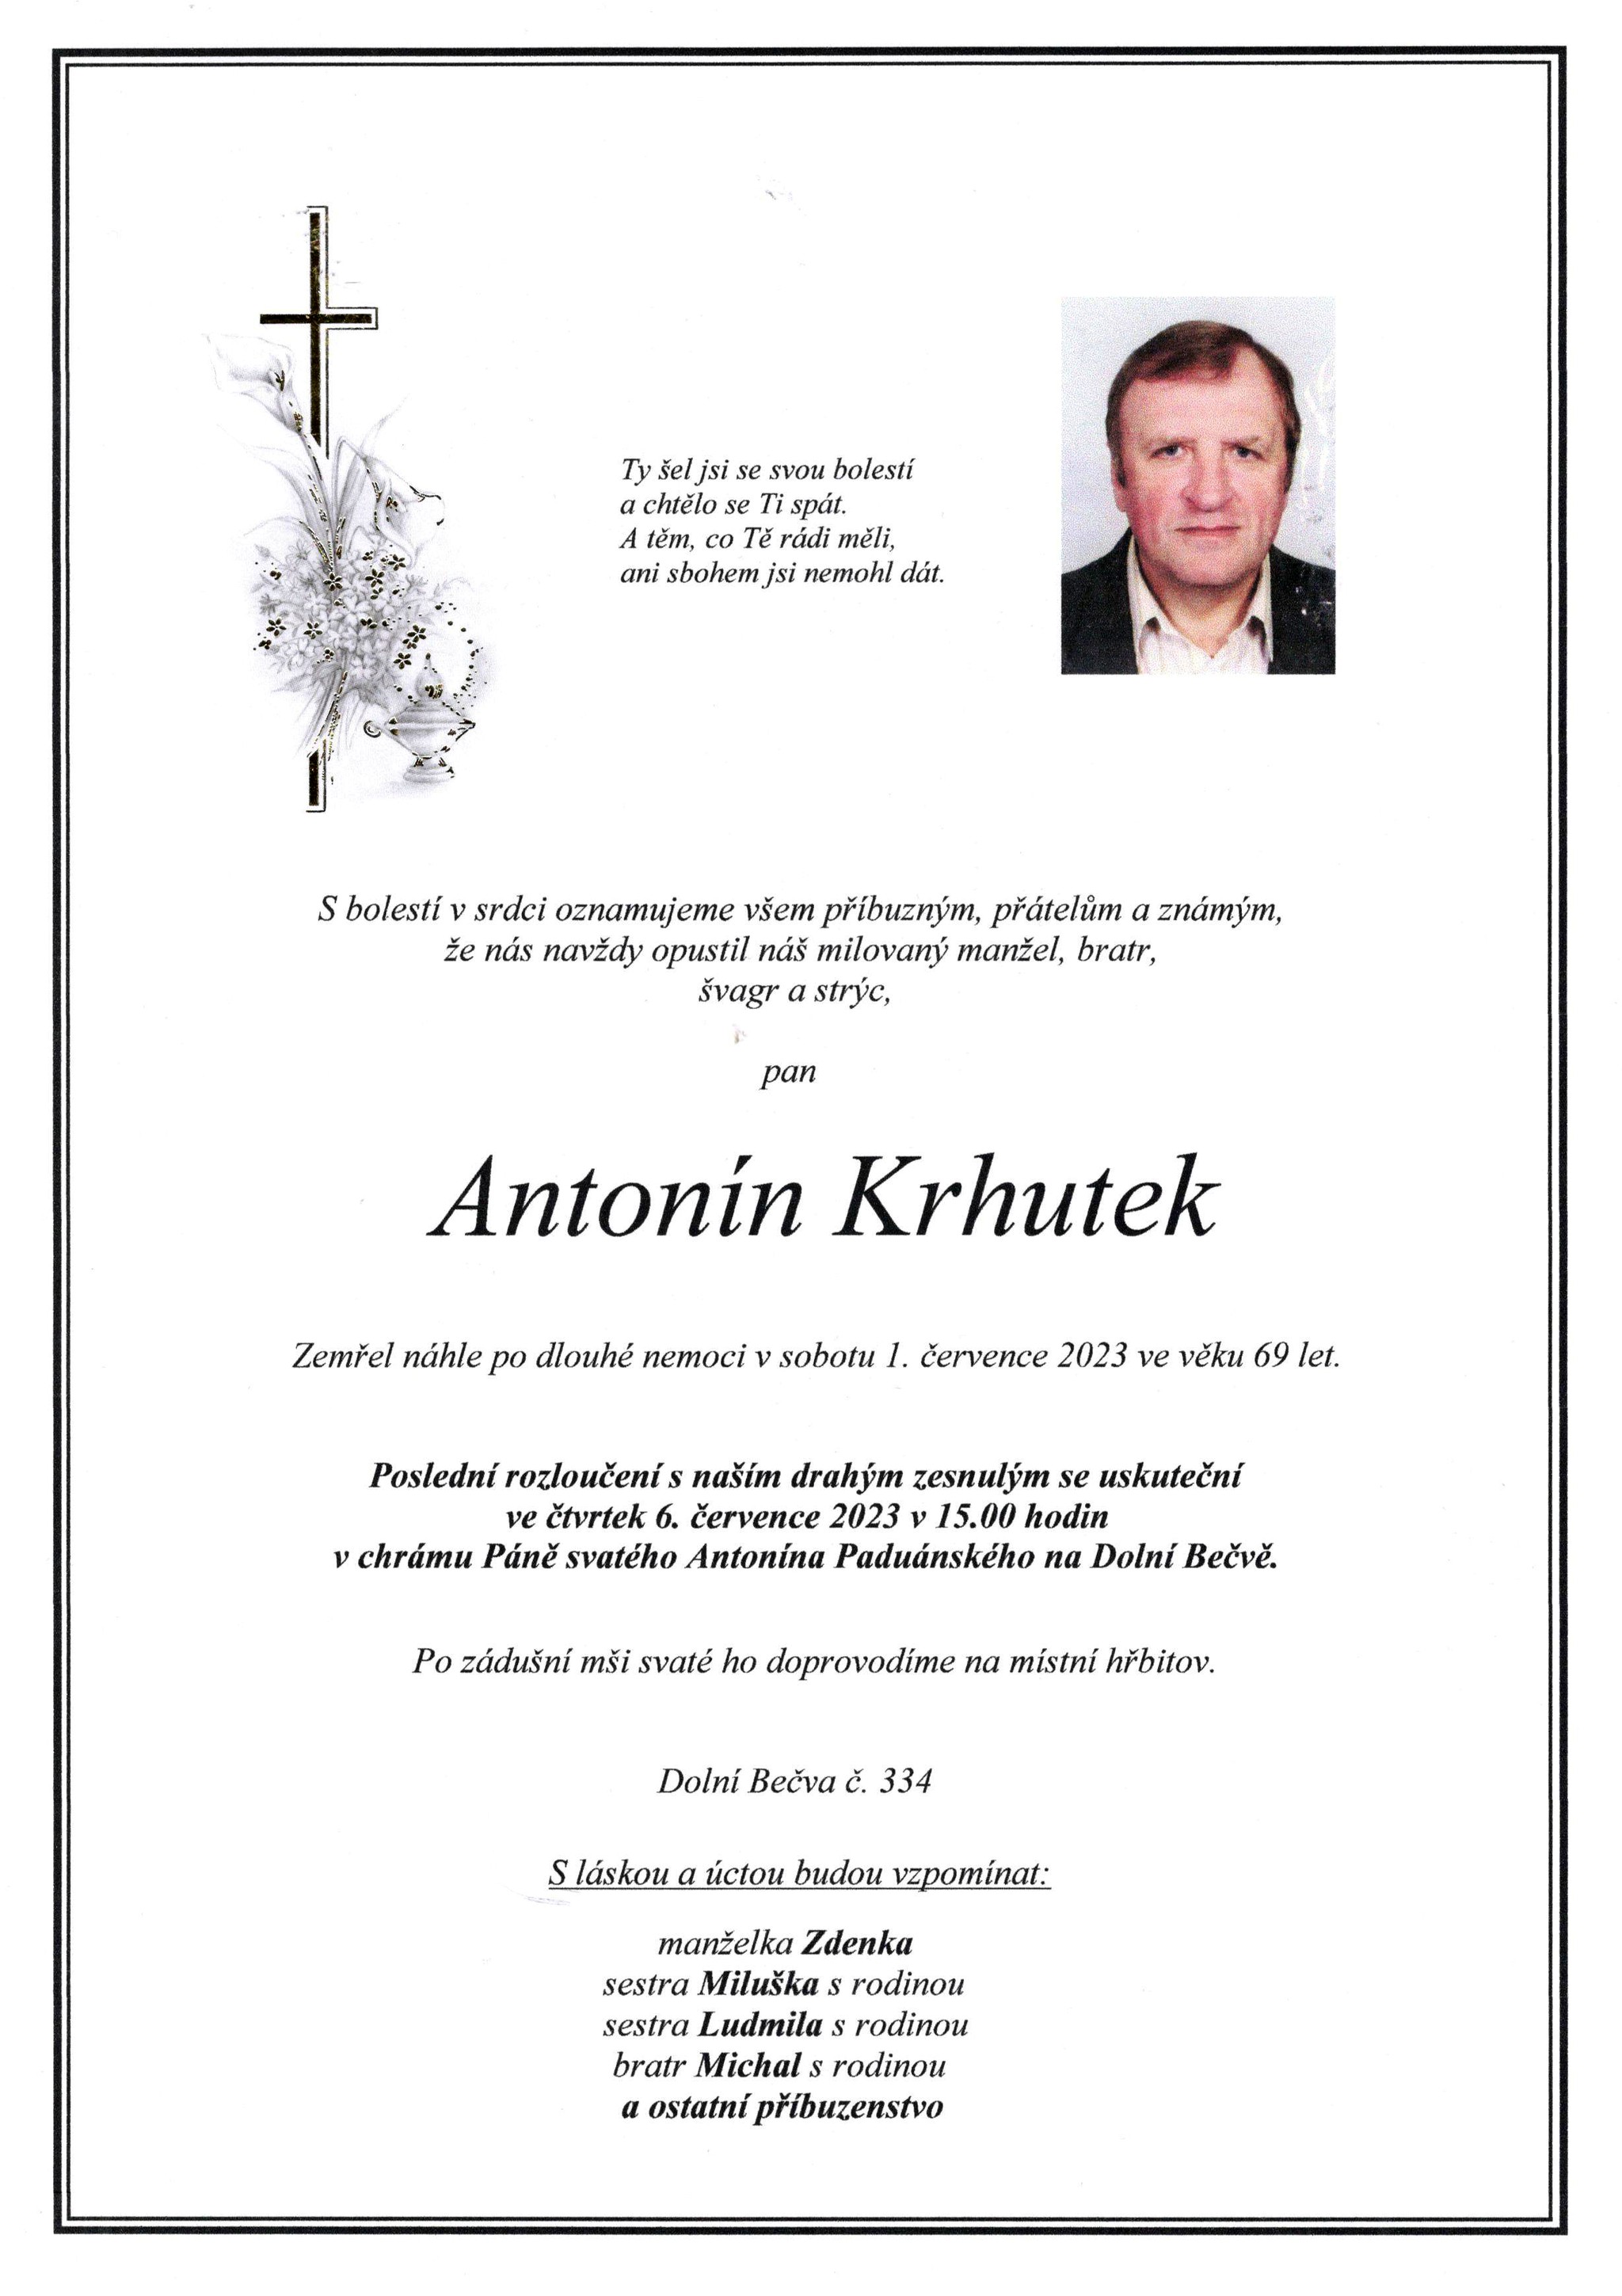 Antonín Krhutek